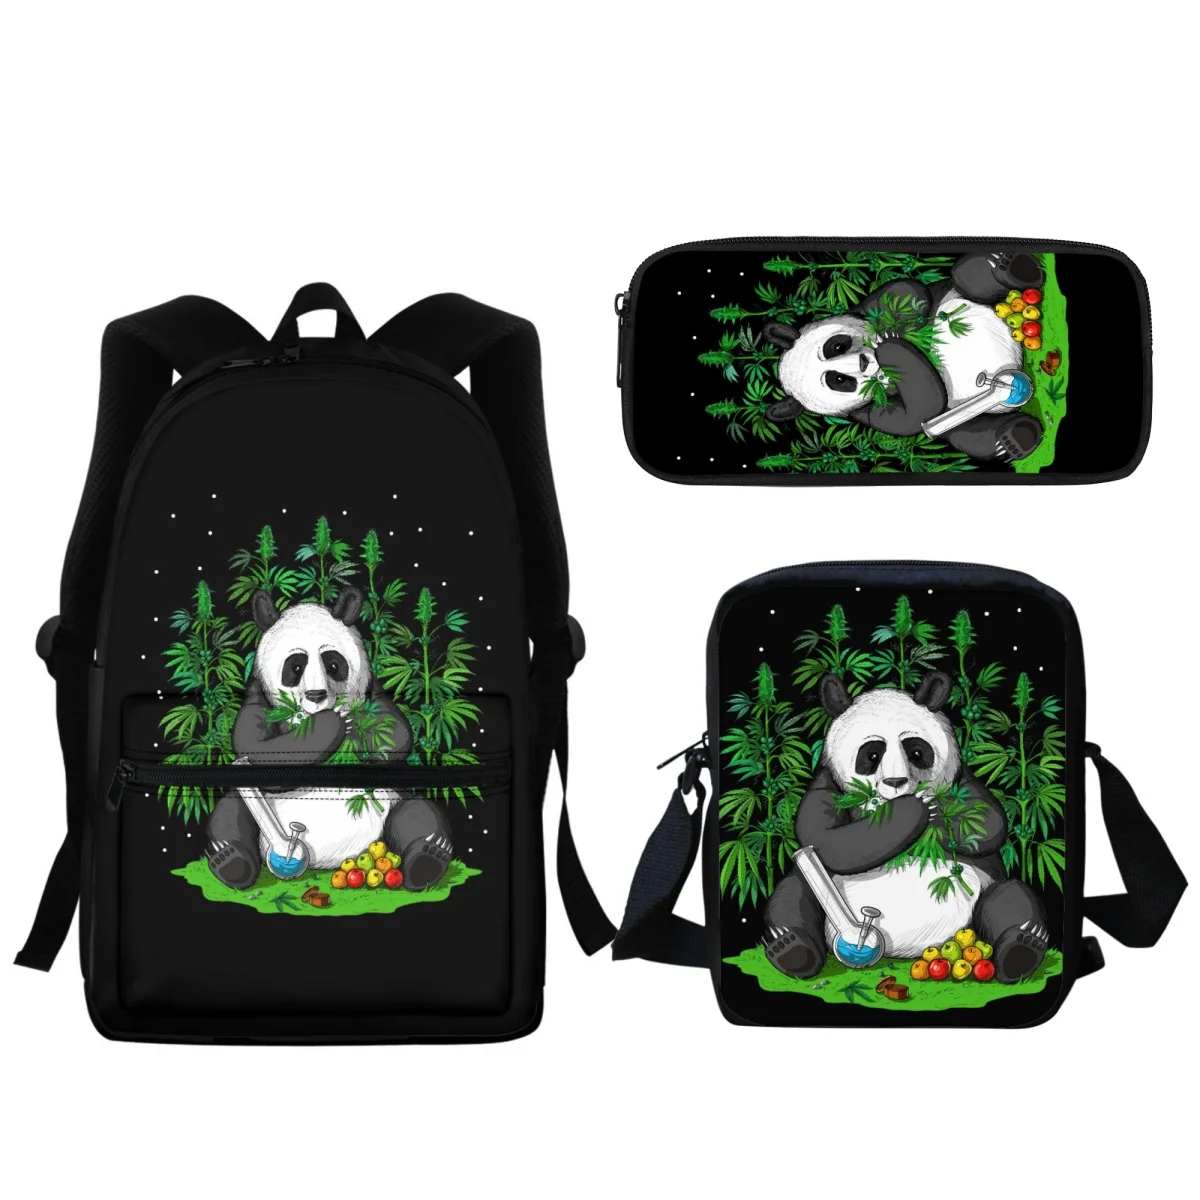 Anime Panda Baskı Öğrenci Sırt Çantası Okul Çantalarını Genç Erkek kız çocuk okul çantası Büyük Kapasiteli Fermuar Günlük Açık Seyahat Çantası Yeni